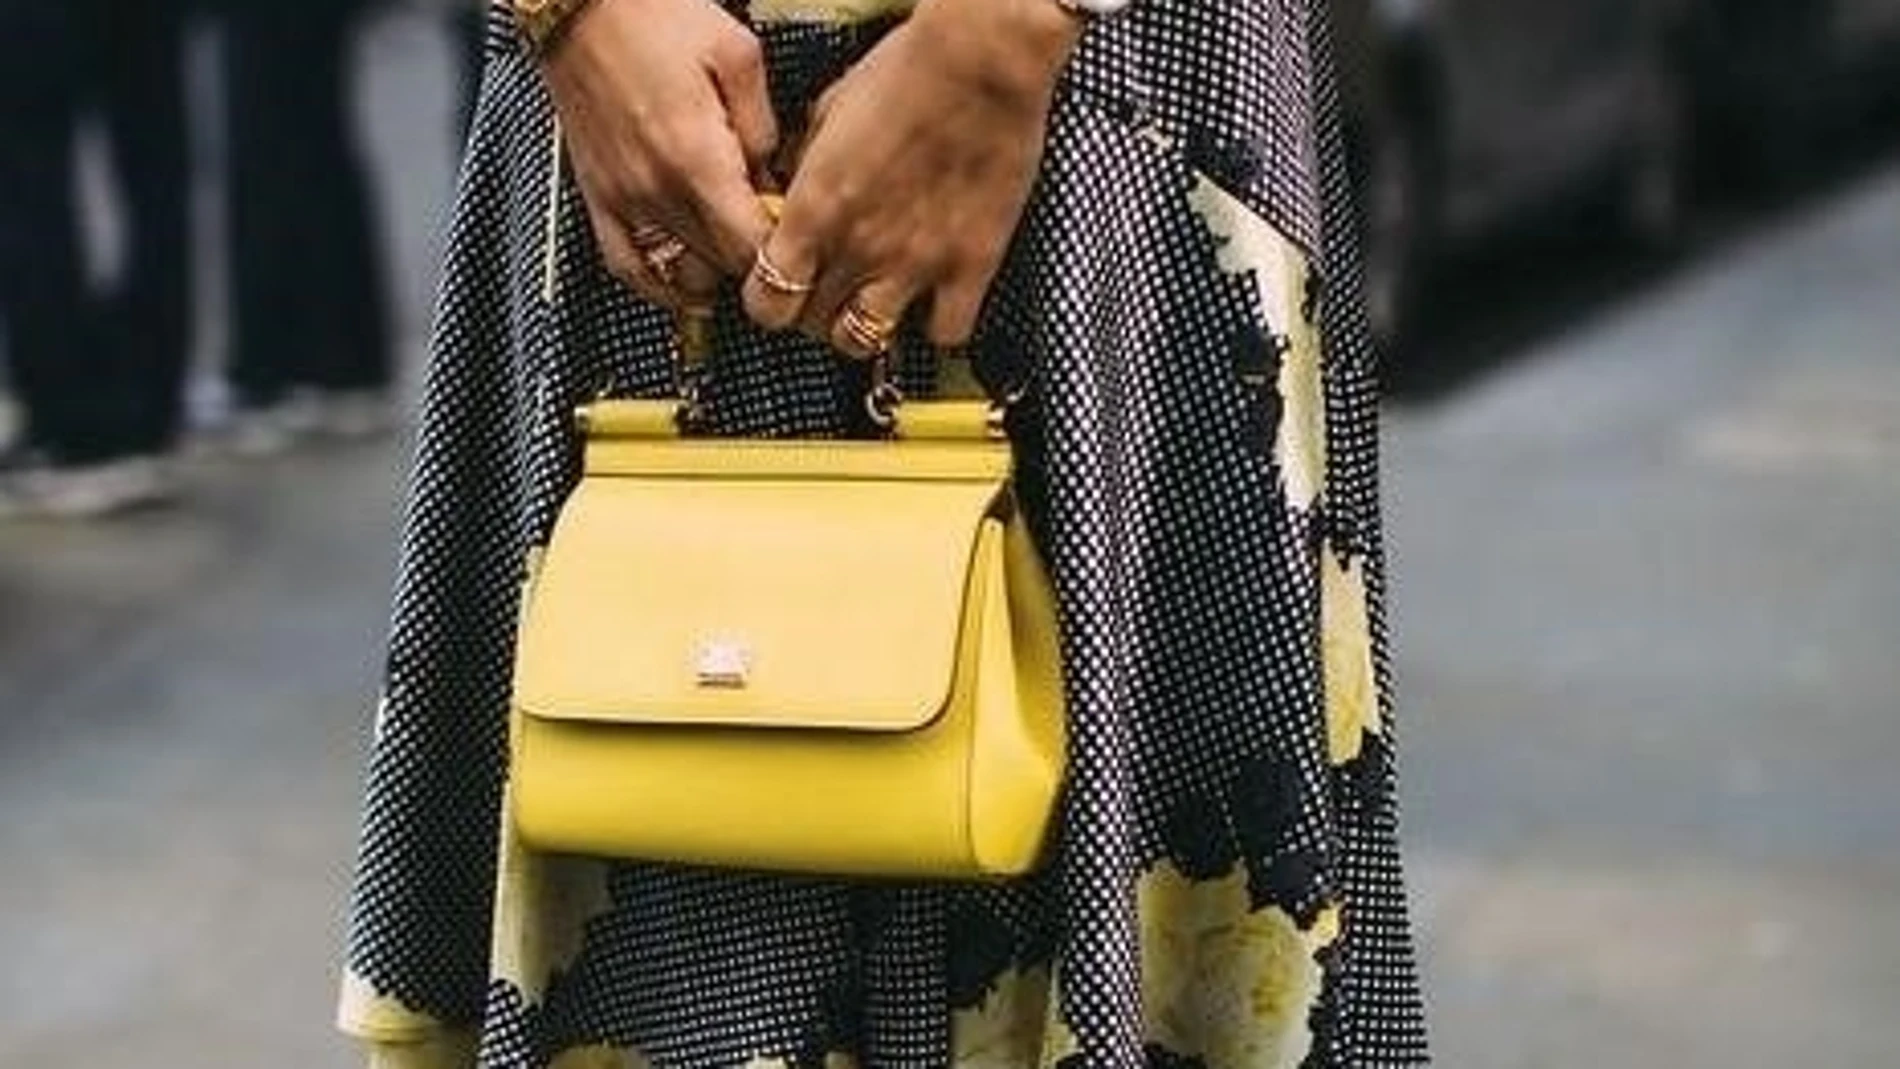 El bolso se distingue por su elegancia y tamaño.